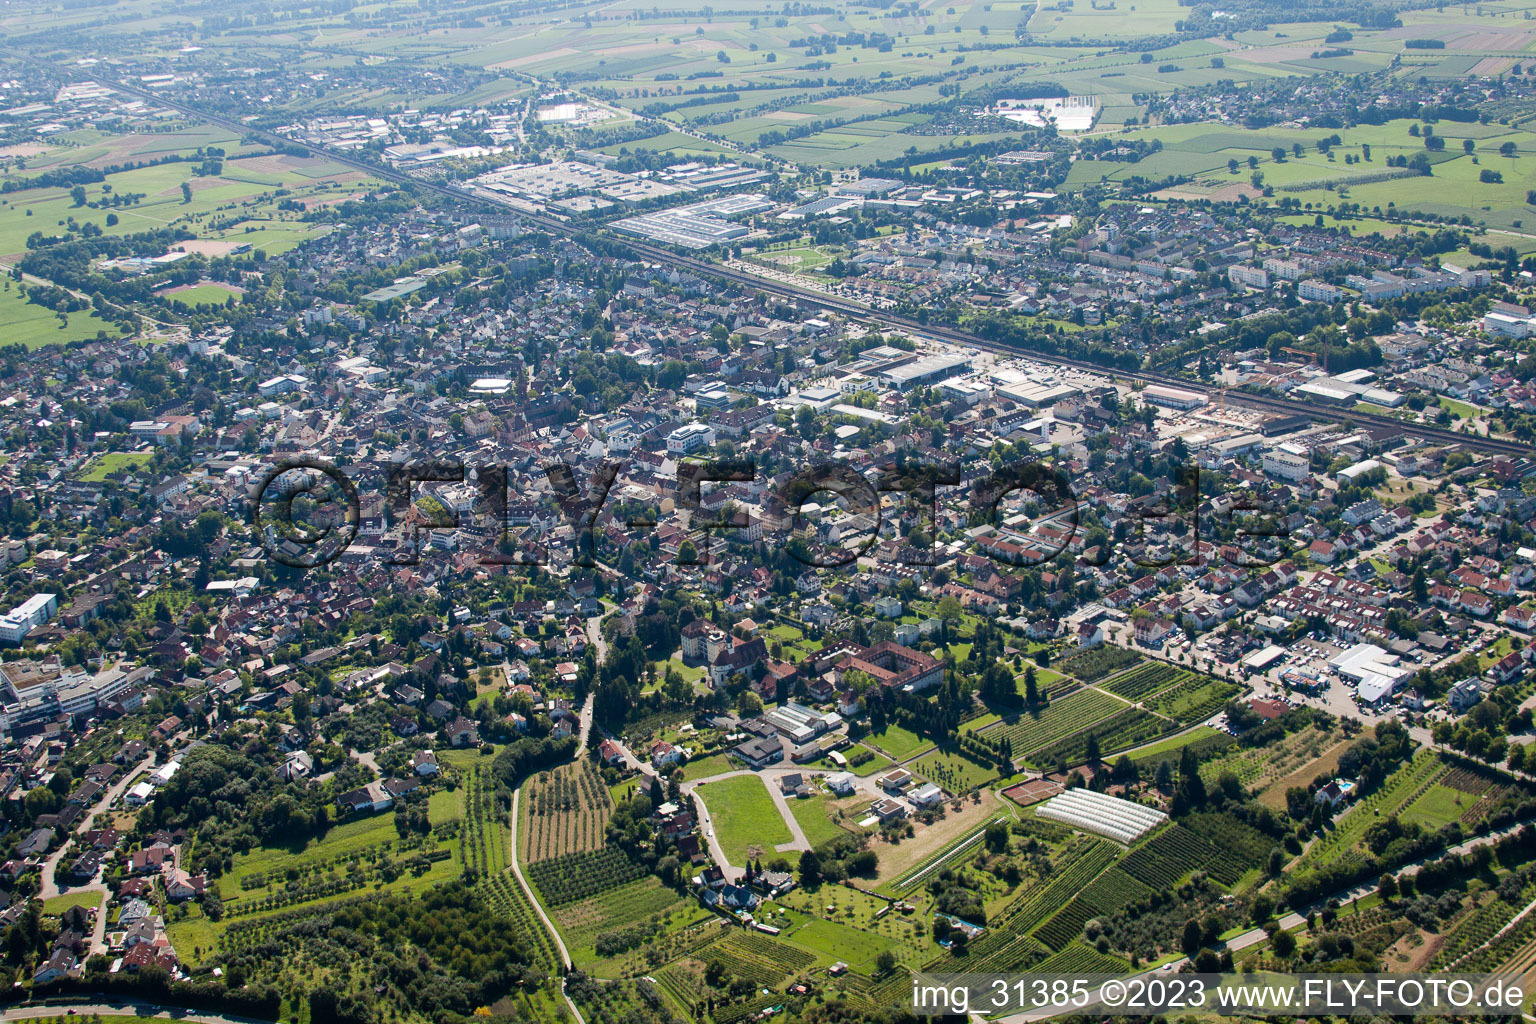 Bühl im Bundesland Baden-Württemberg, Deutschland aus der Luft betrachtet